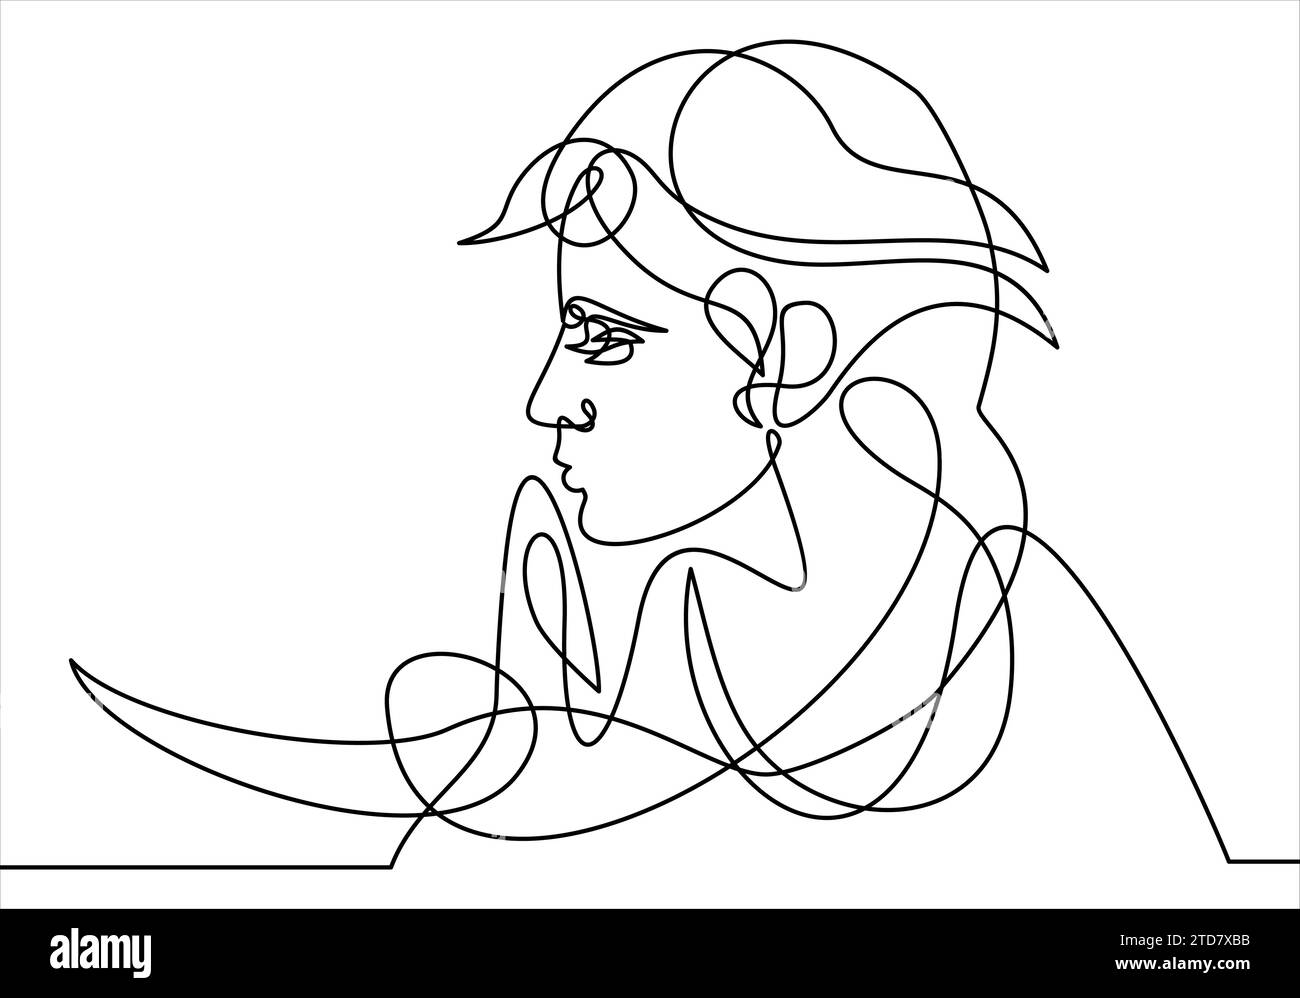 Disegno continuo a una linea. Ritratto astratto del volto romantico di una donna. Illustrazione vettoriale. Illustrazione Vettoriale